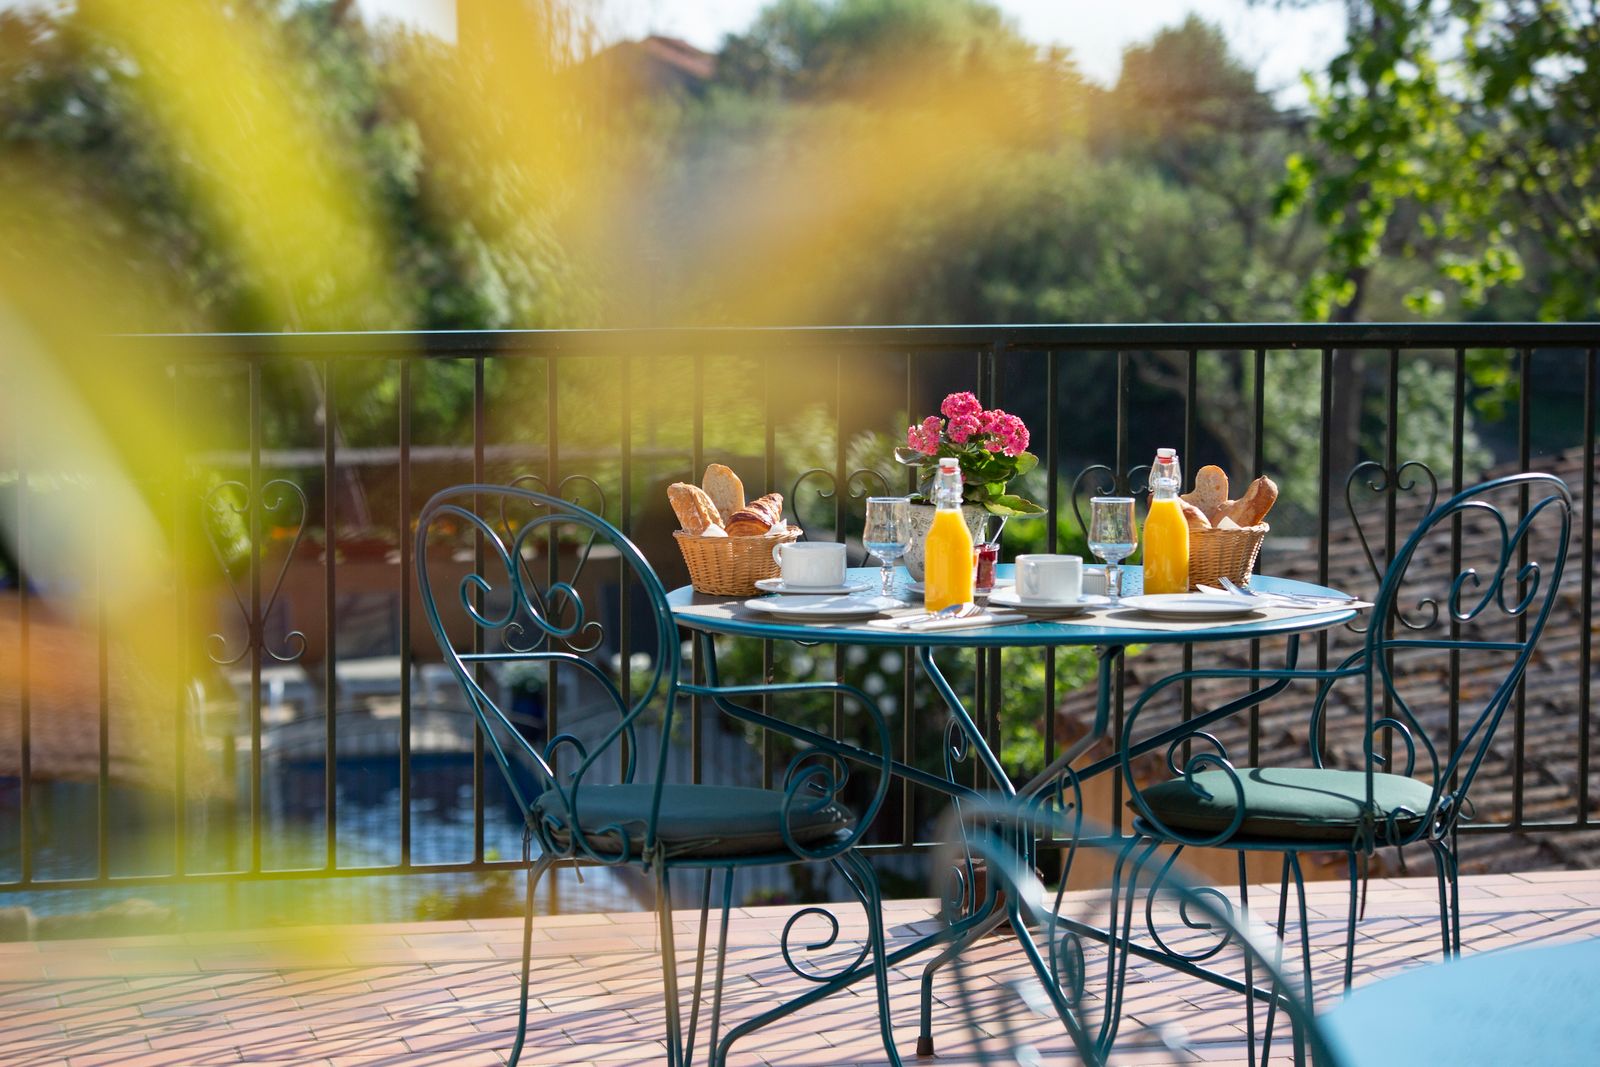 Petit déjeuner sur la terrasse avec boissons chaudes, croissants et jus d'orange, on voit la piscine en arrière plan